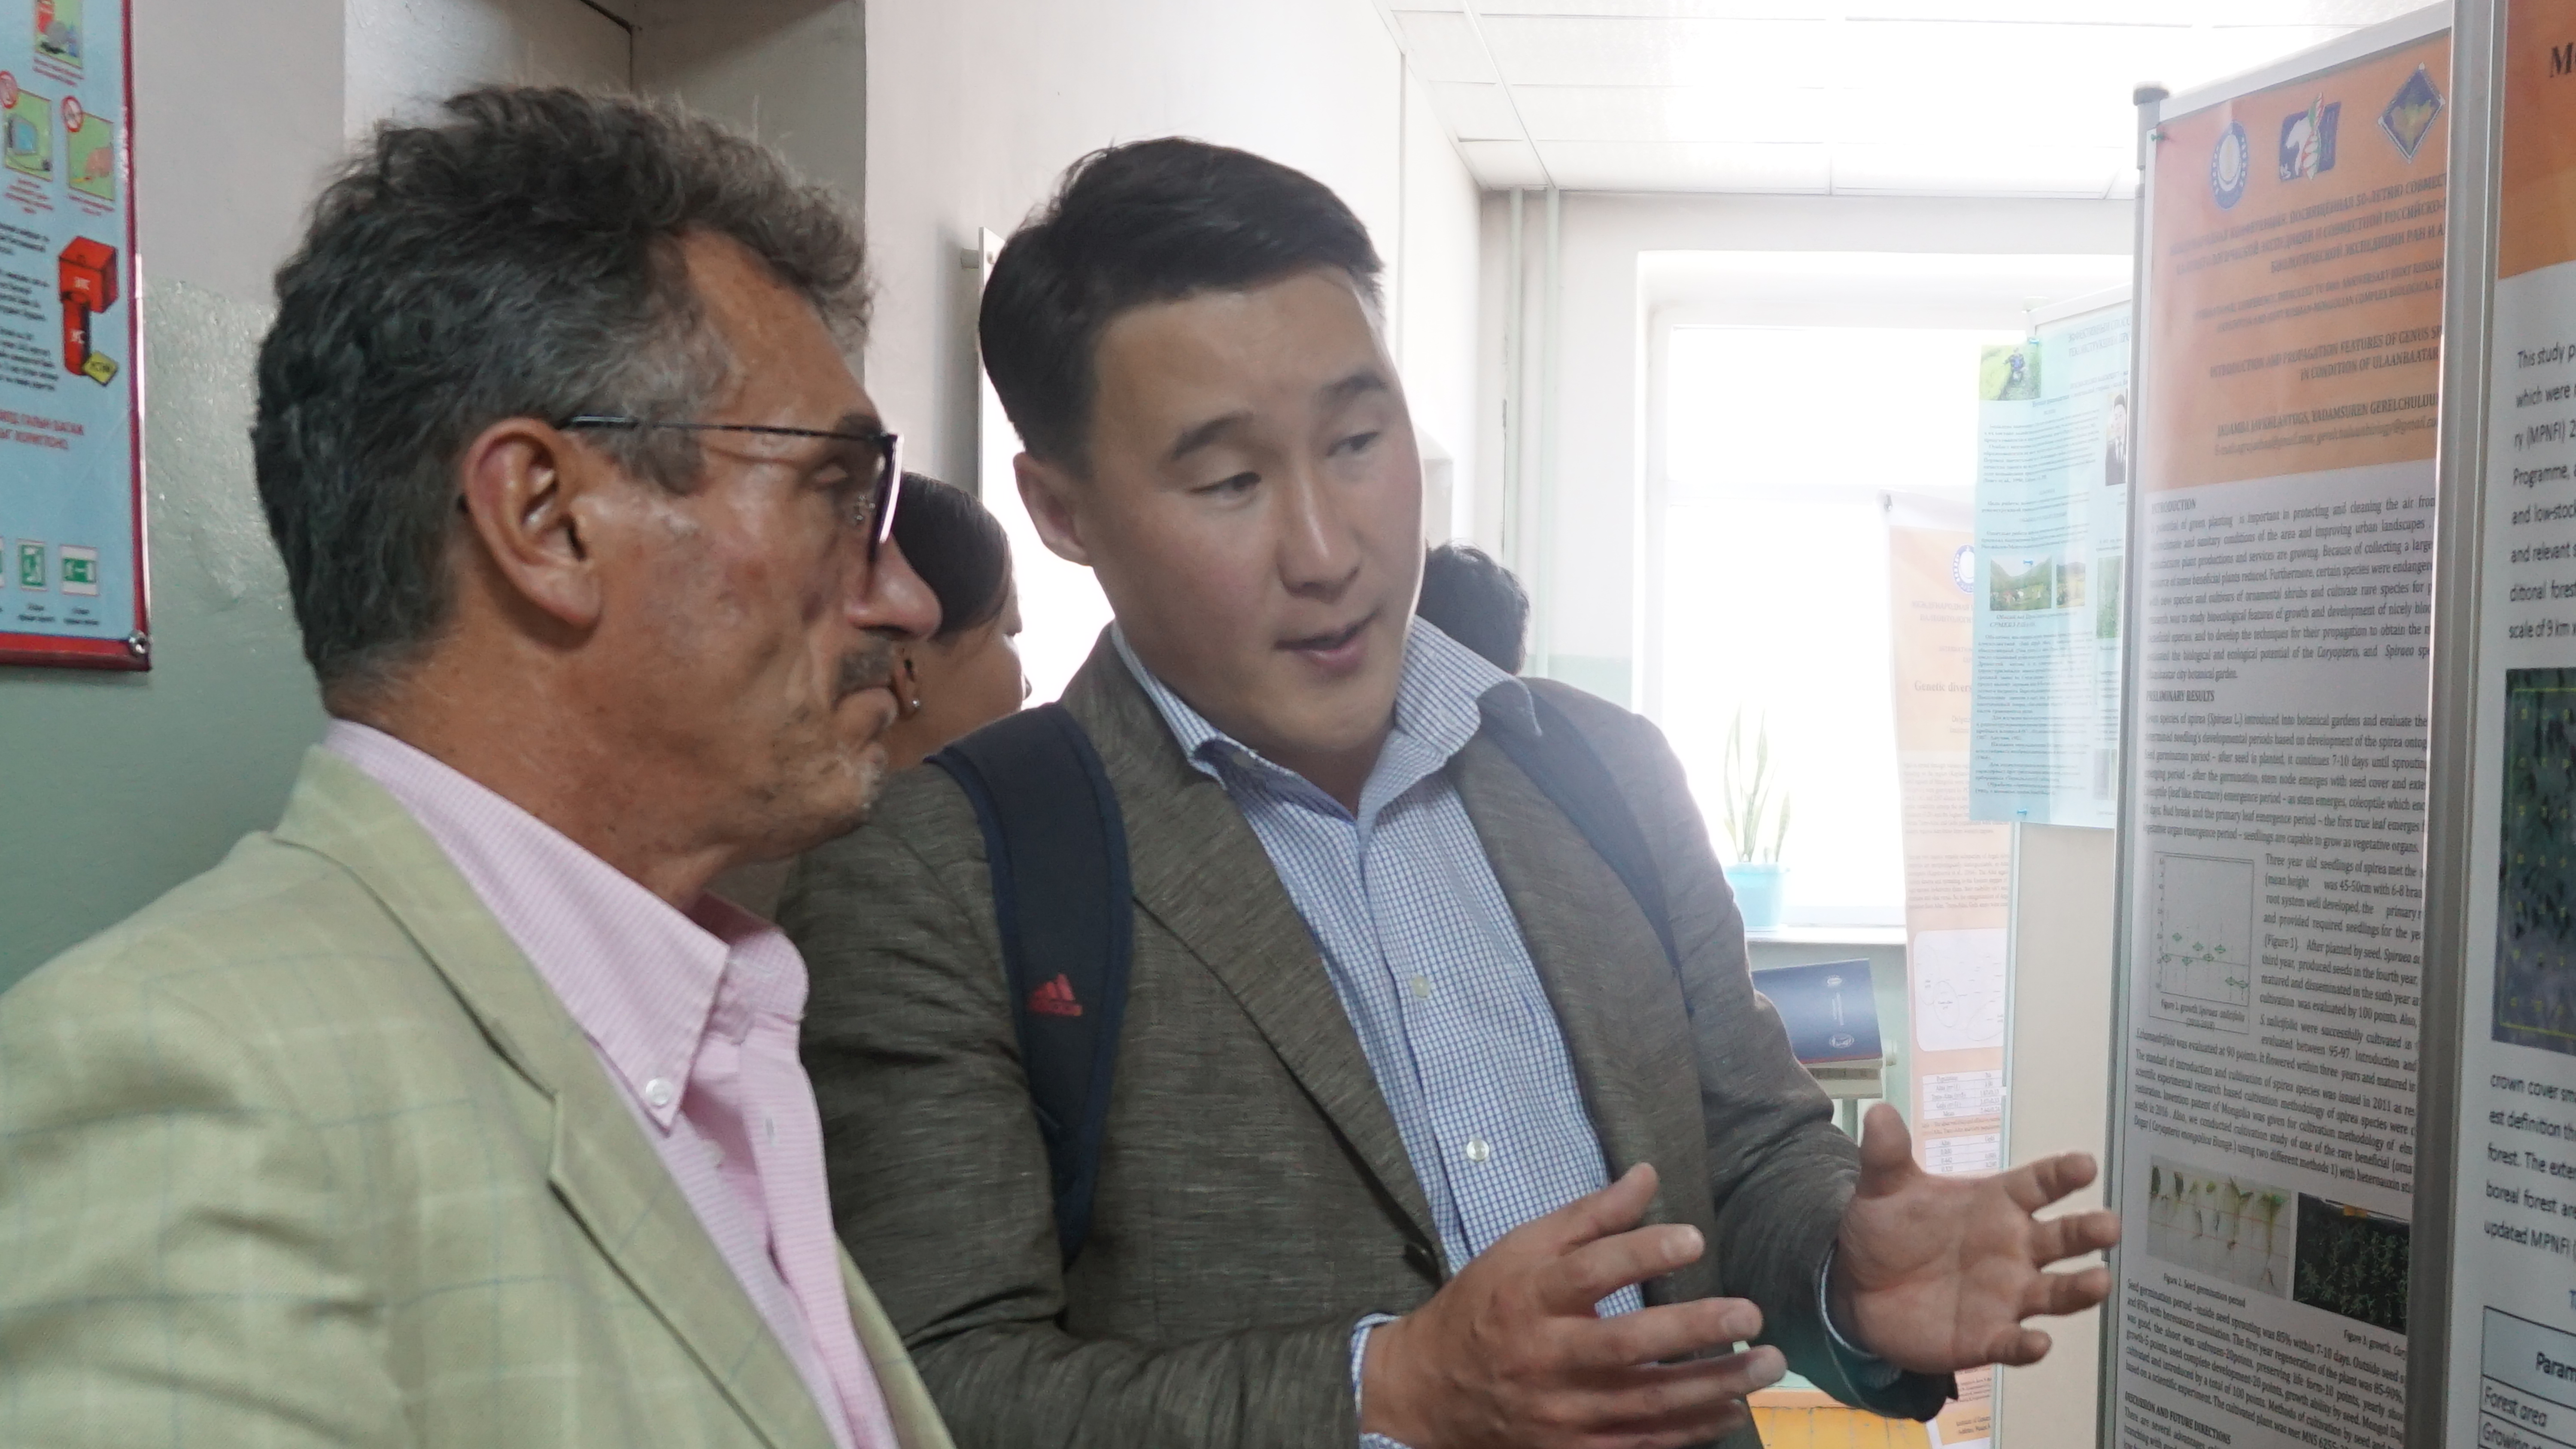 Начальник РЧ СРМКБЭ РАН и АНМ, к.б.н. С.Н. Бажа обсуждает стендовые доклады с молодыми монгольскими учеными